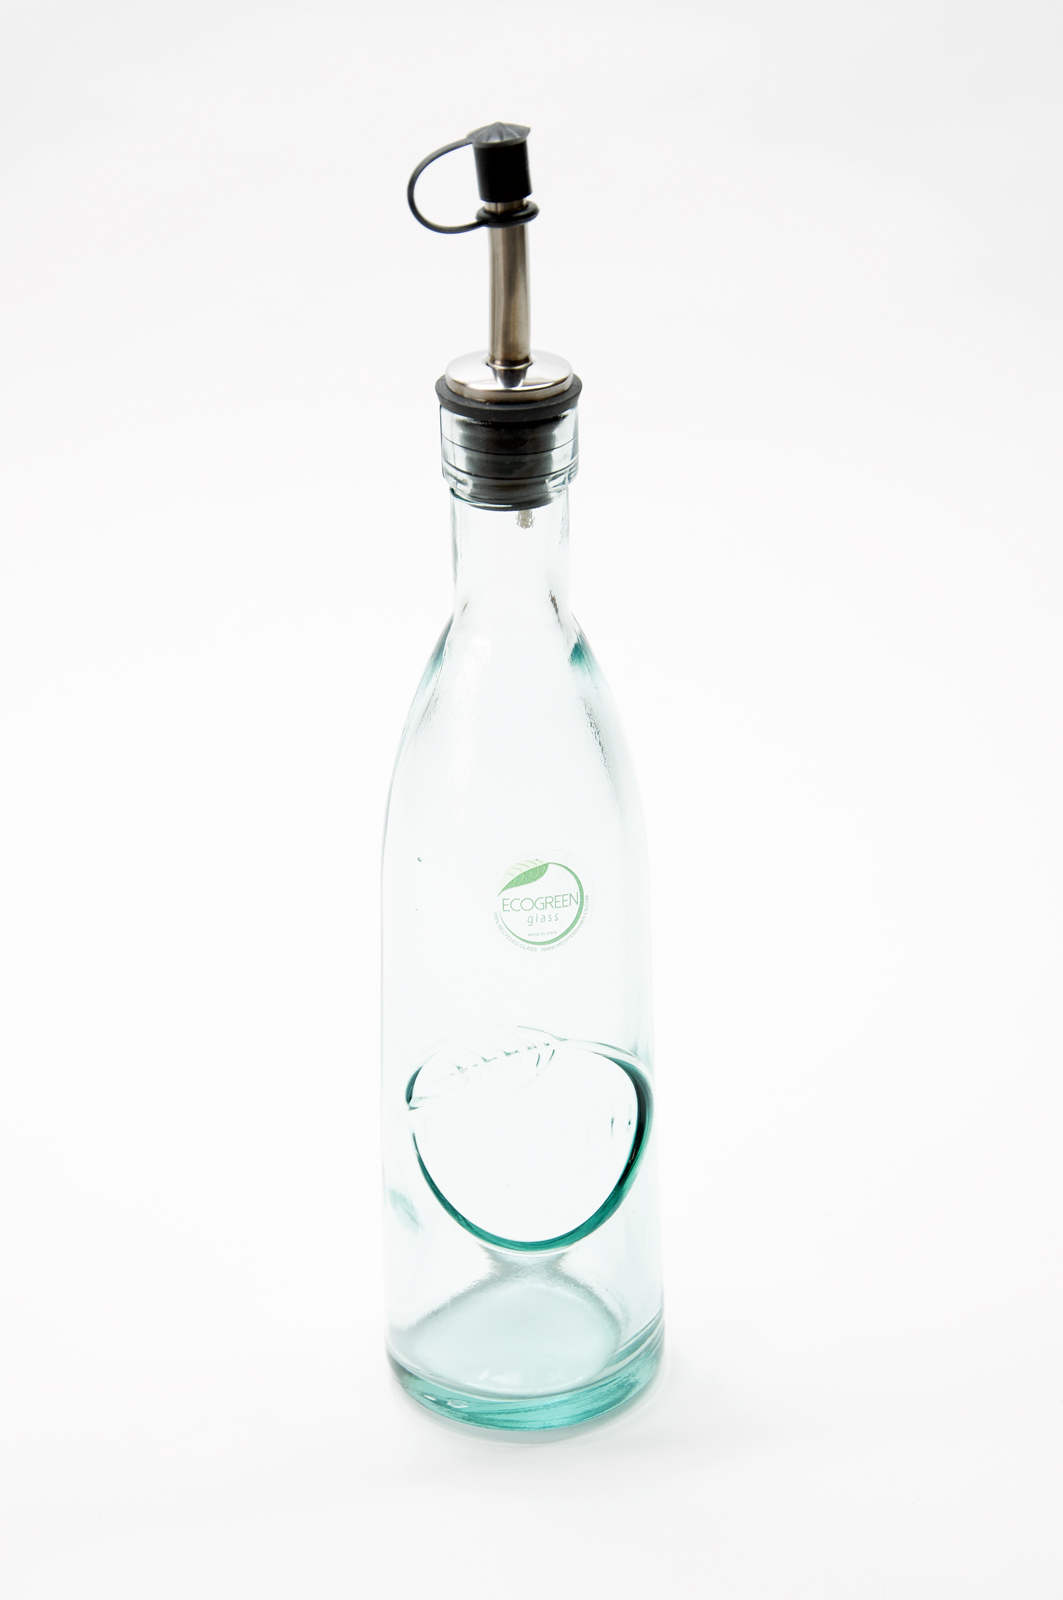 Ecogreen Flasche 300ml mit Ausgiesser Essig / Öl Decor